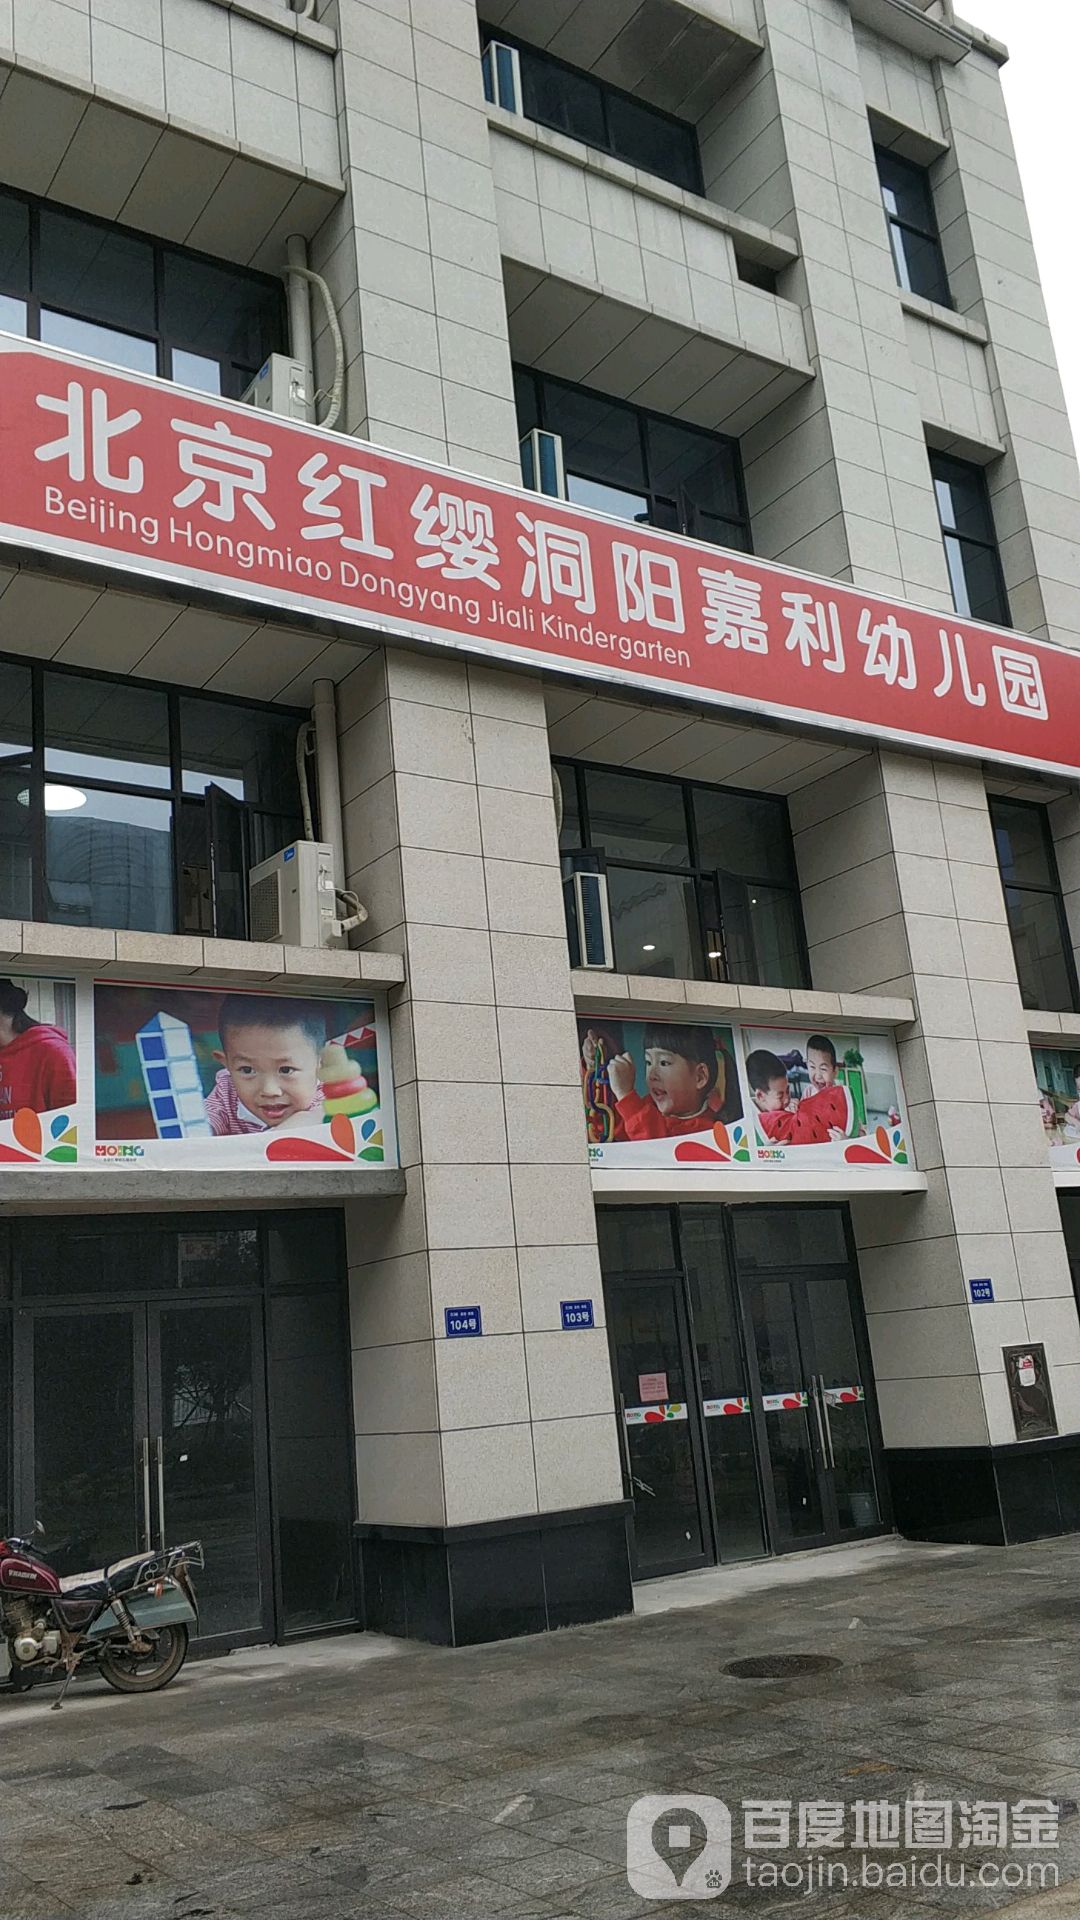 北京红缨洞阳嘉利幼儿园